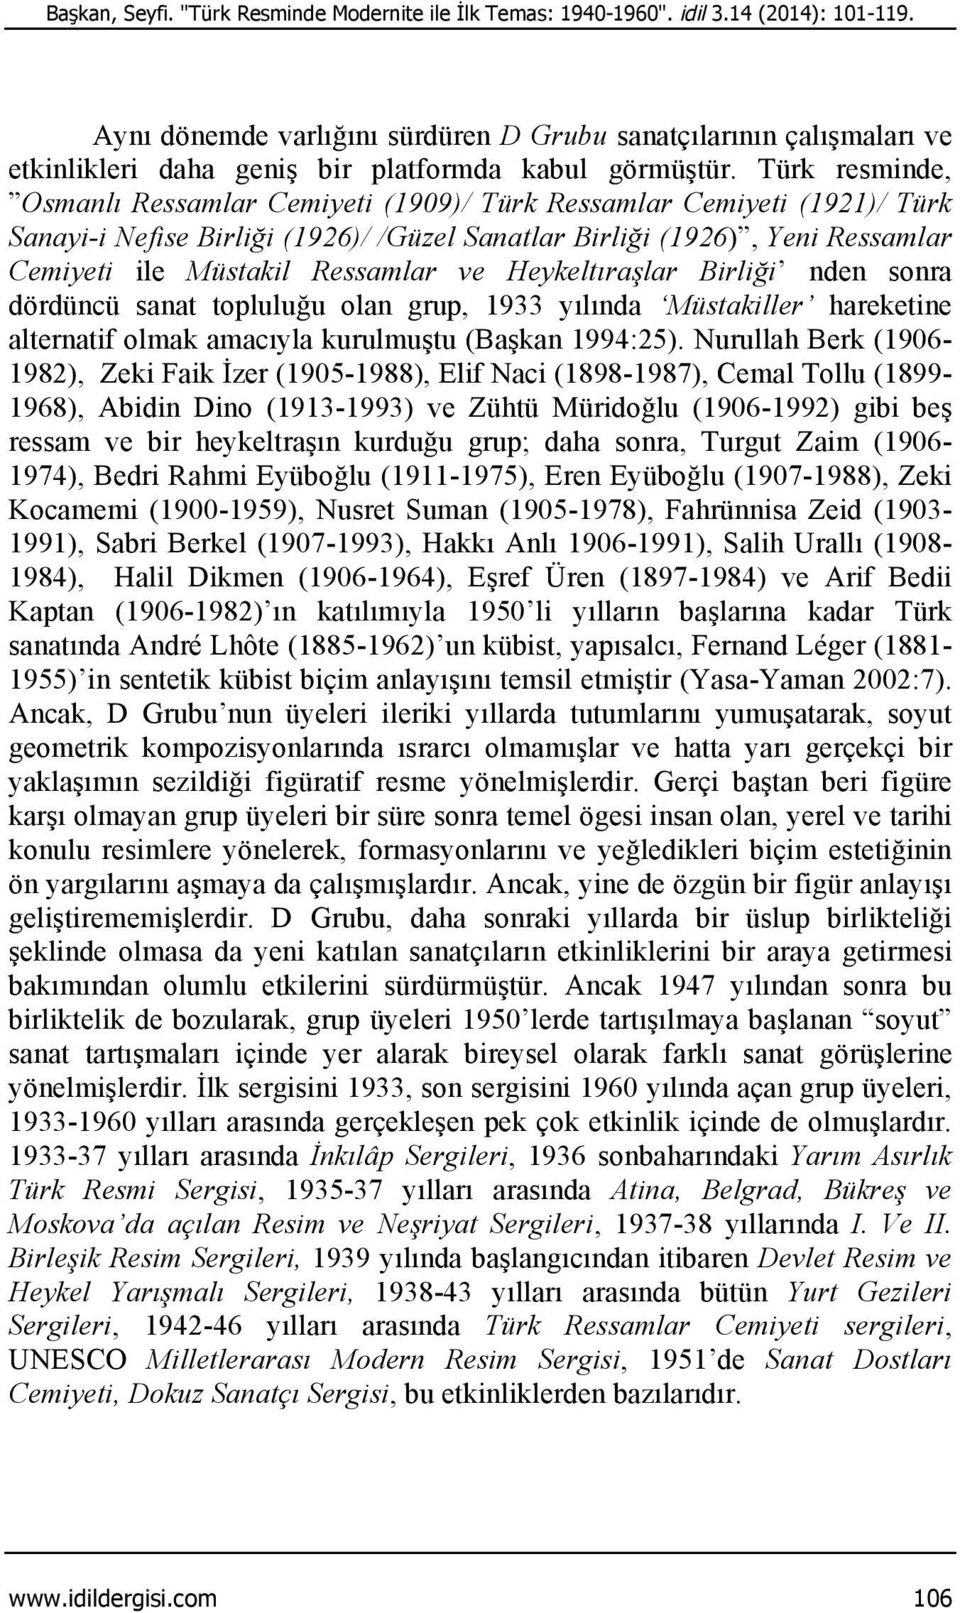 Türk resminde, Osmanlı Ressamlar Cemiyeti (1909)/ Türk Ressamlar Cemiyeti (1921)/ Türk Sanayi-i Nefise Birliği (1926)/ /Güzel Sanatlar Birliği (1926), Yeni Ressamlar Cemiyeti ile Müstakil Ressamlar